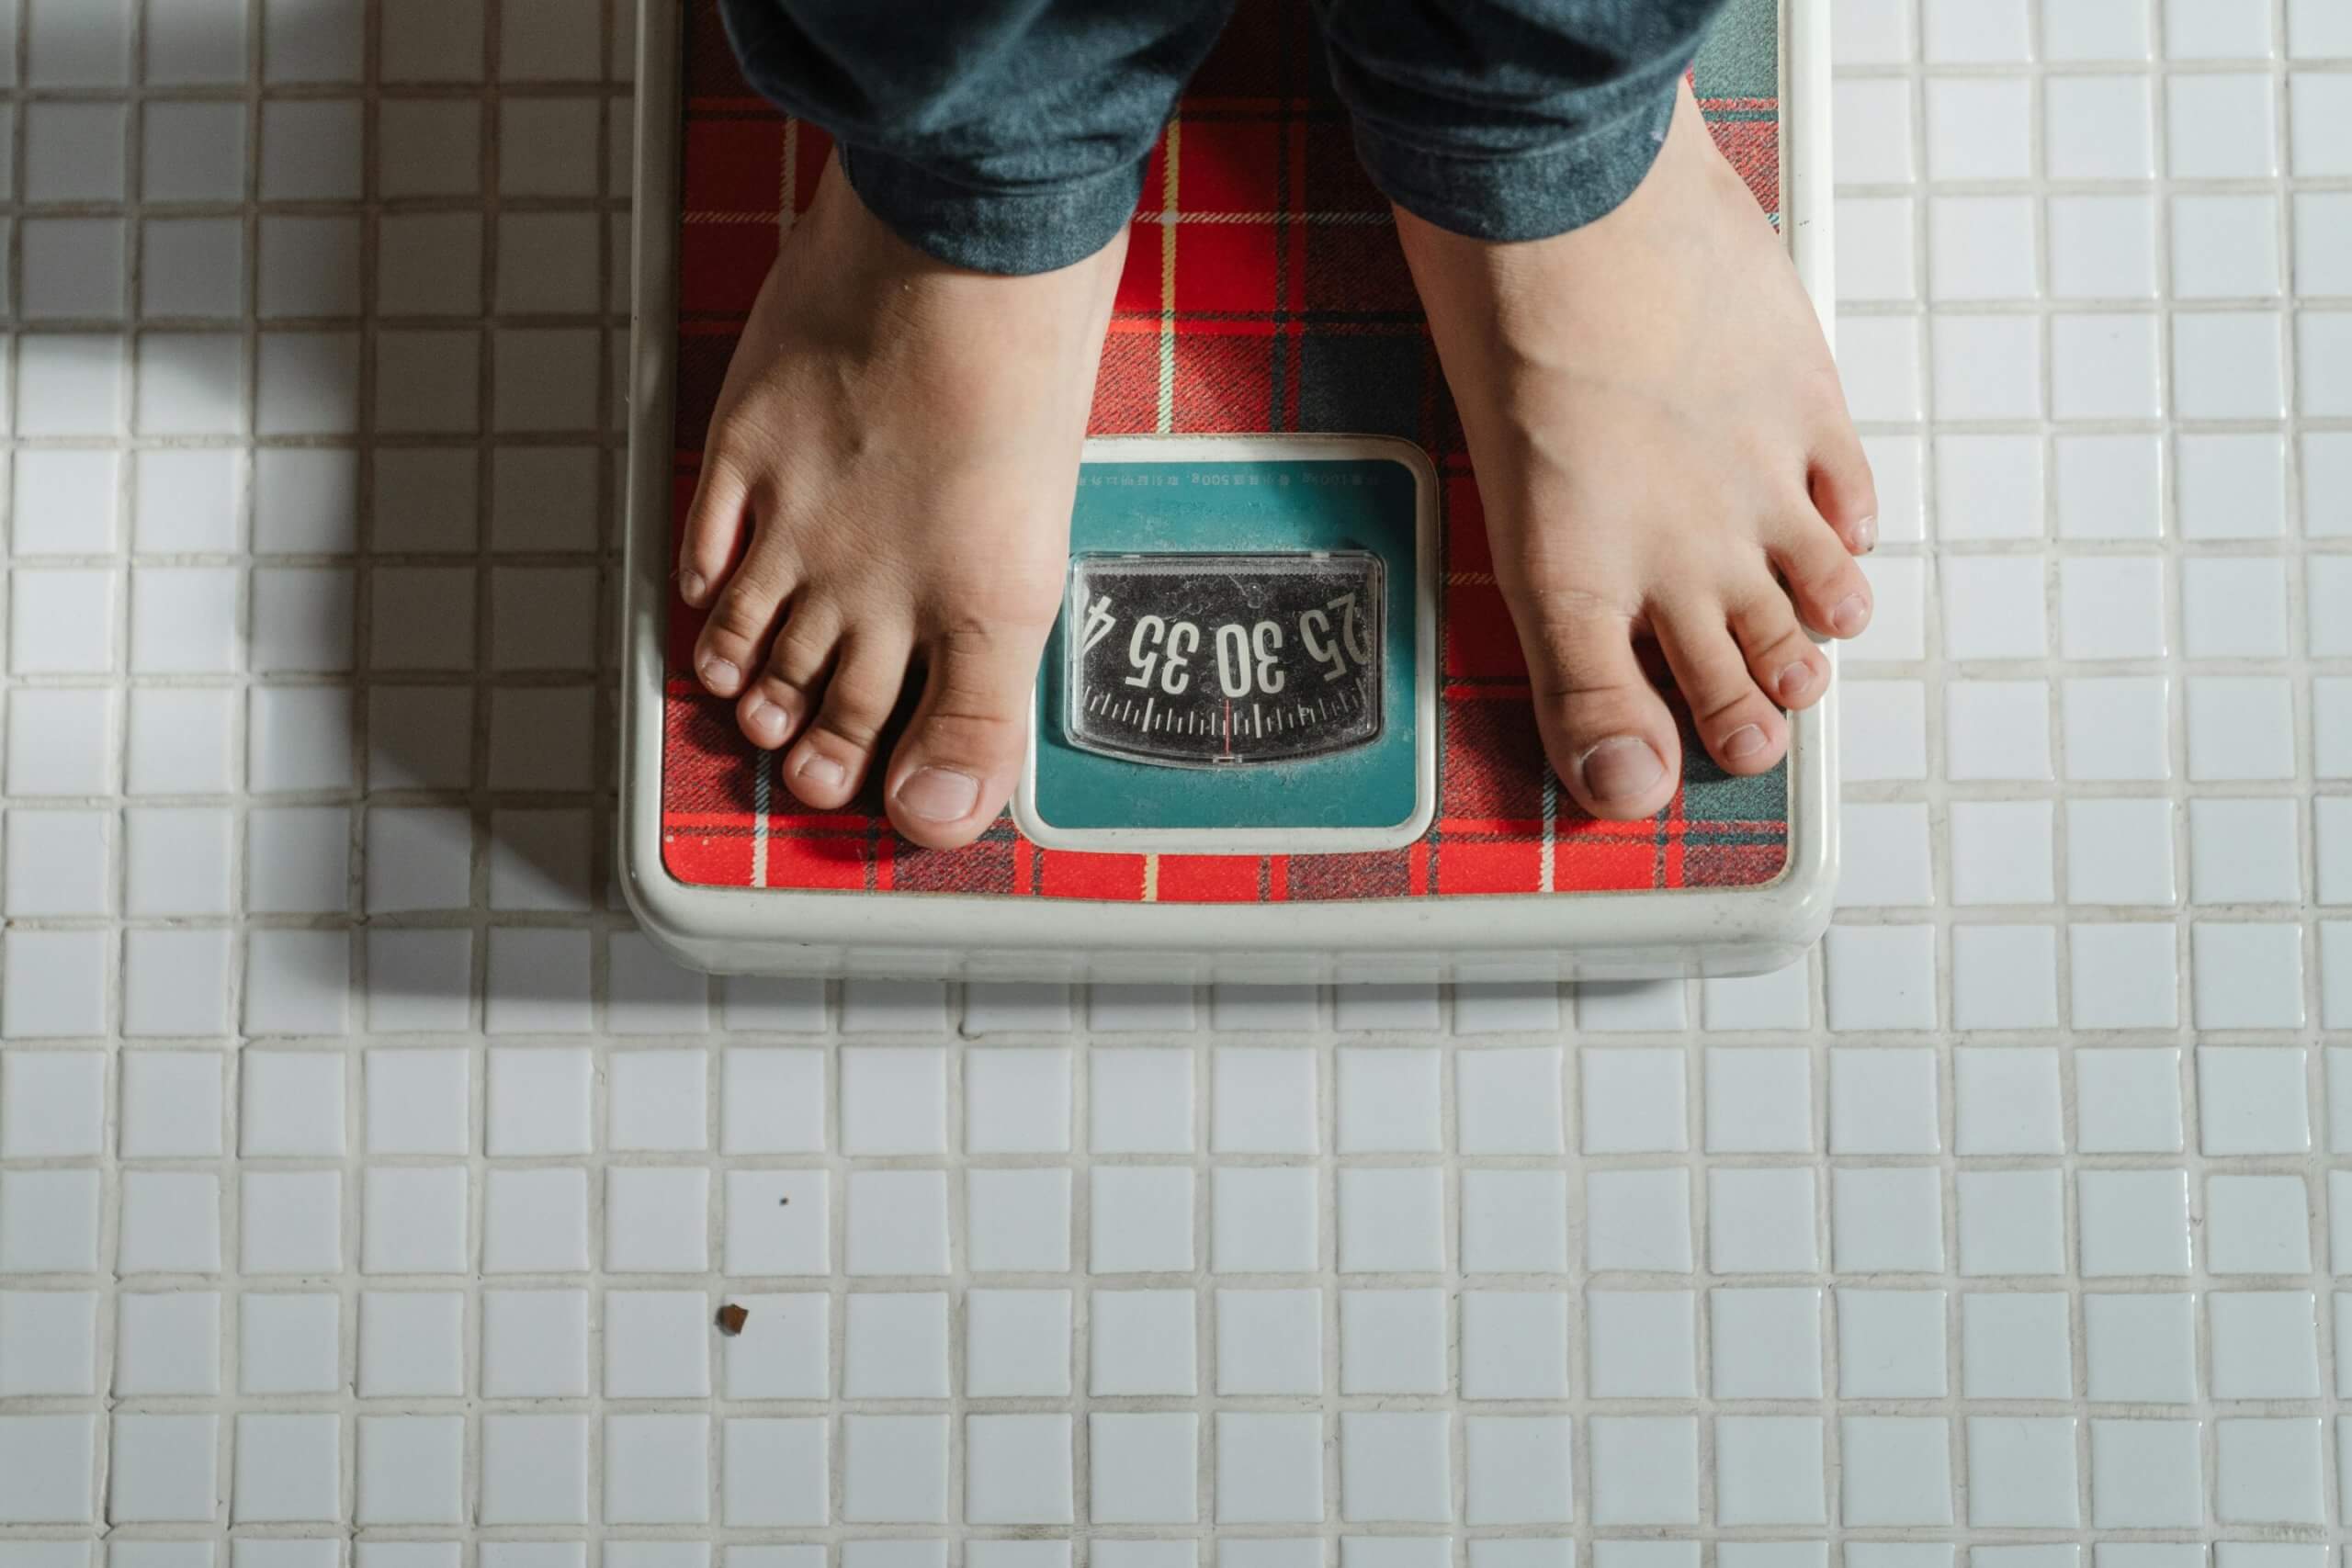 Весы могут лгать: почему не стоит слепо верить цифрам! Как часто вы встаете на весы? И помогает ли регулярное взвешивание похудеть? Изображение: scx2.b-cdn.net. Фото.